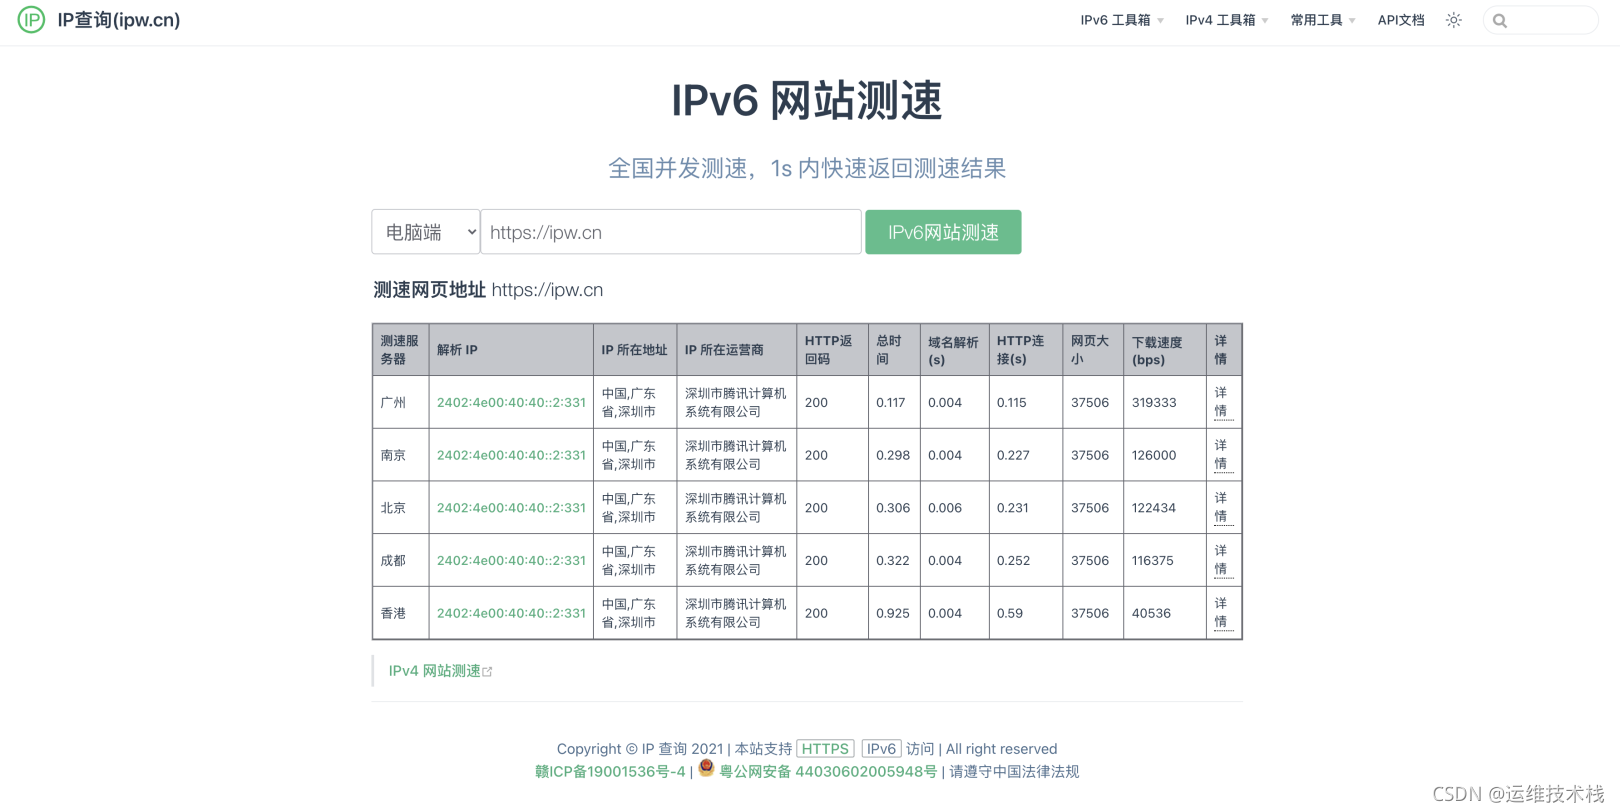 һĿѶ CVMϿ IPv6